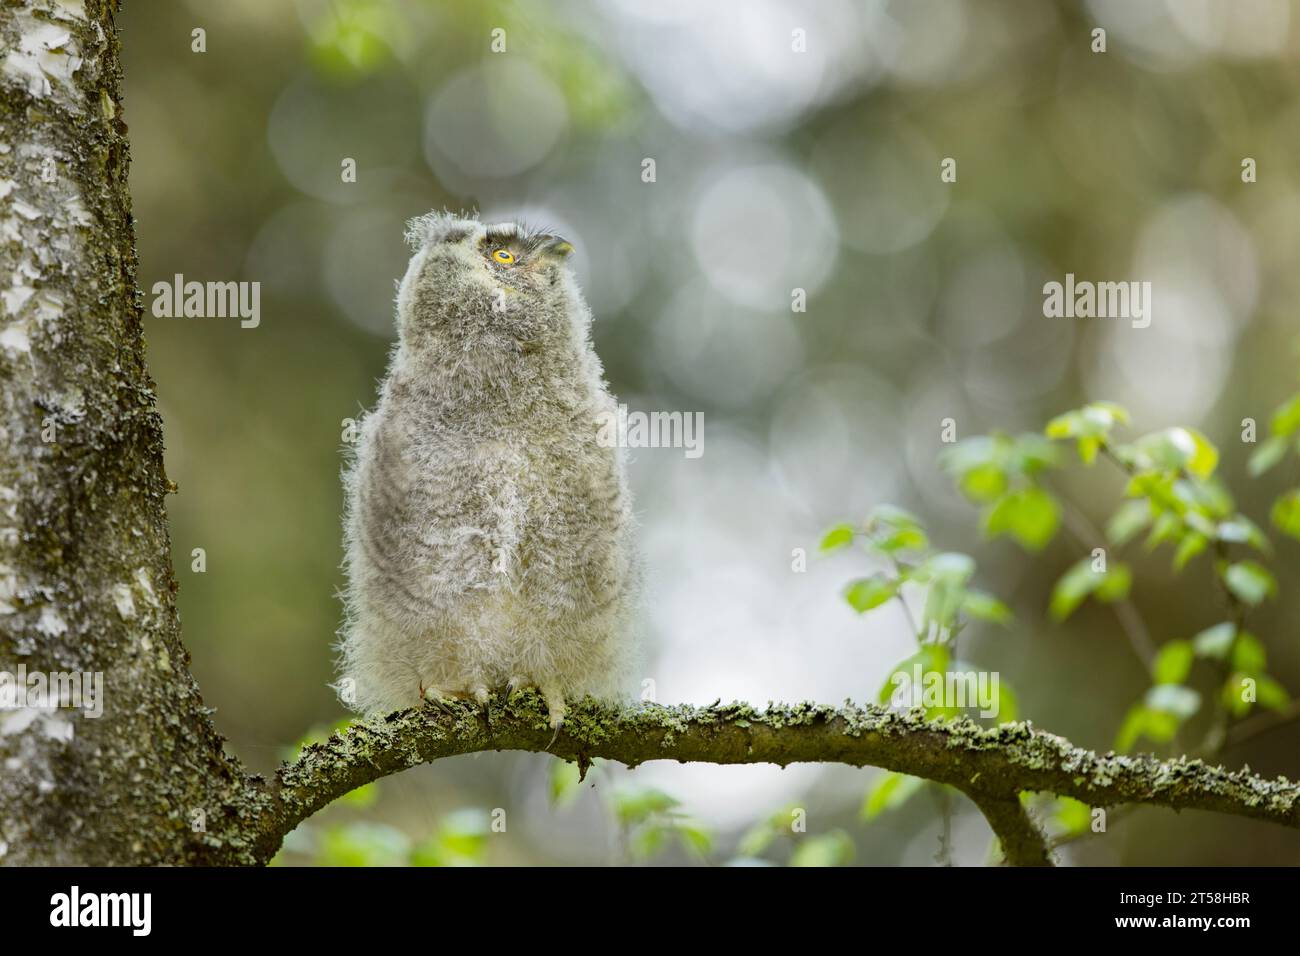 Chouette pelucheuse à oreilles longues (asio otus) assise sur la branche de bouleau. Oiseau dans l'habitat naturel, république tchèque Banque D'Images